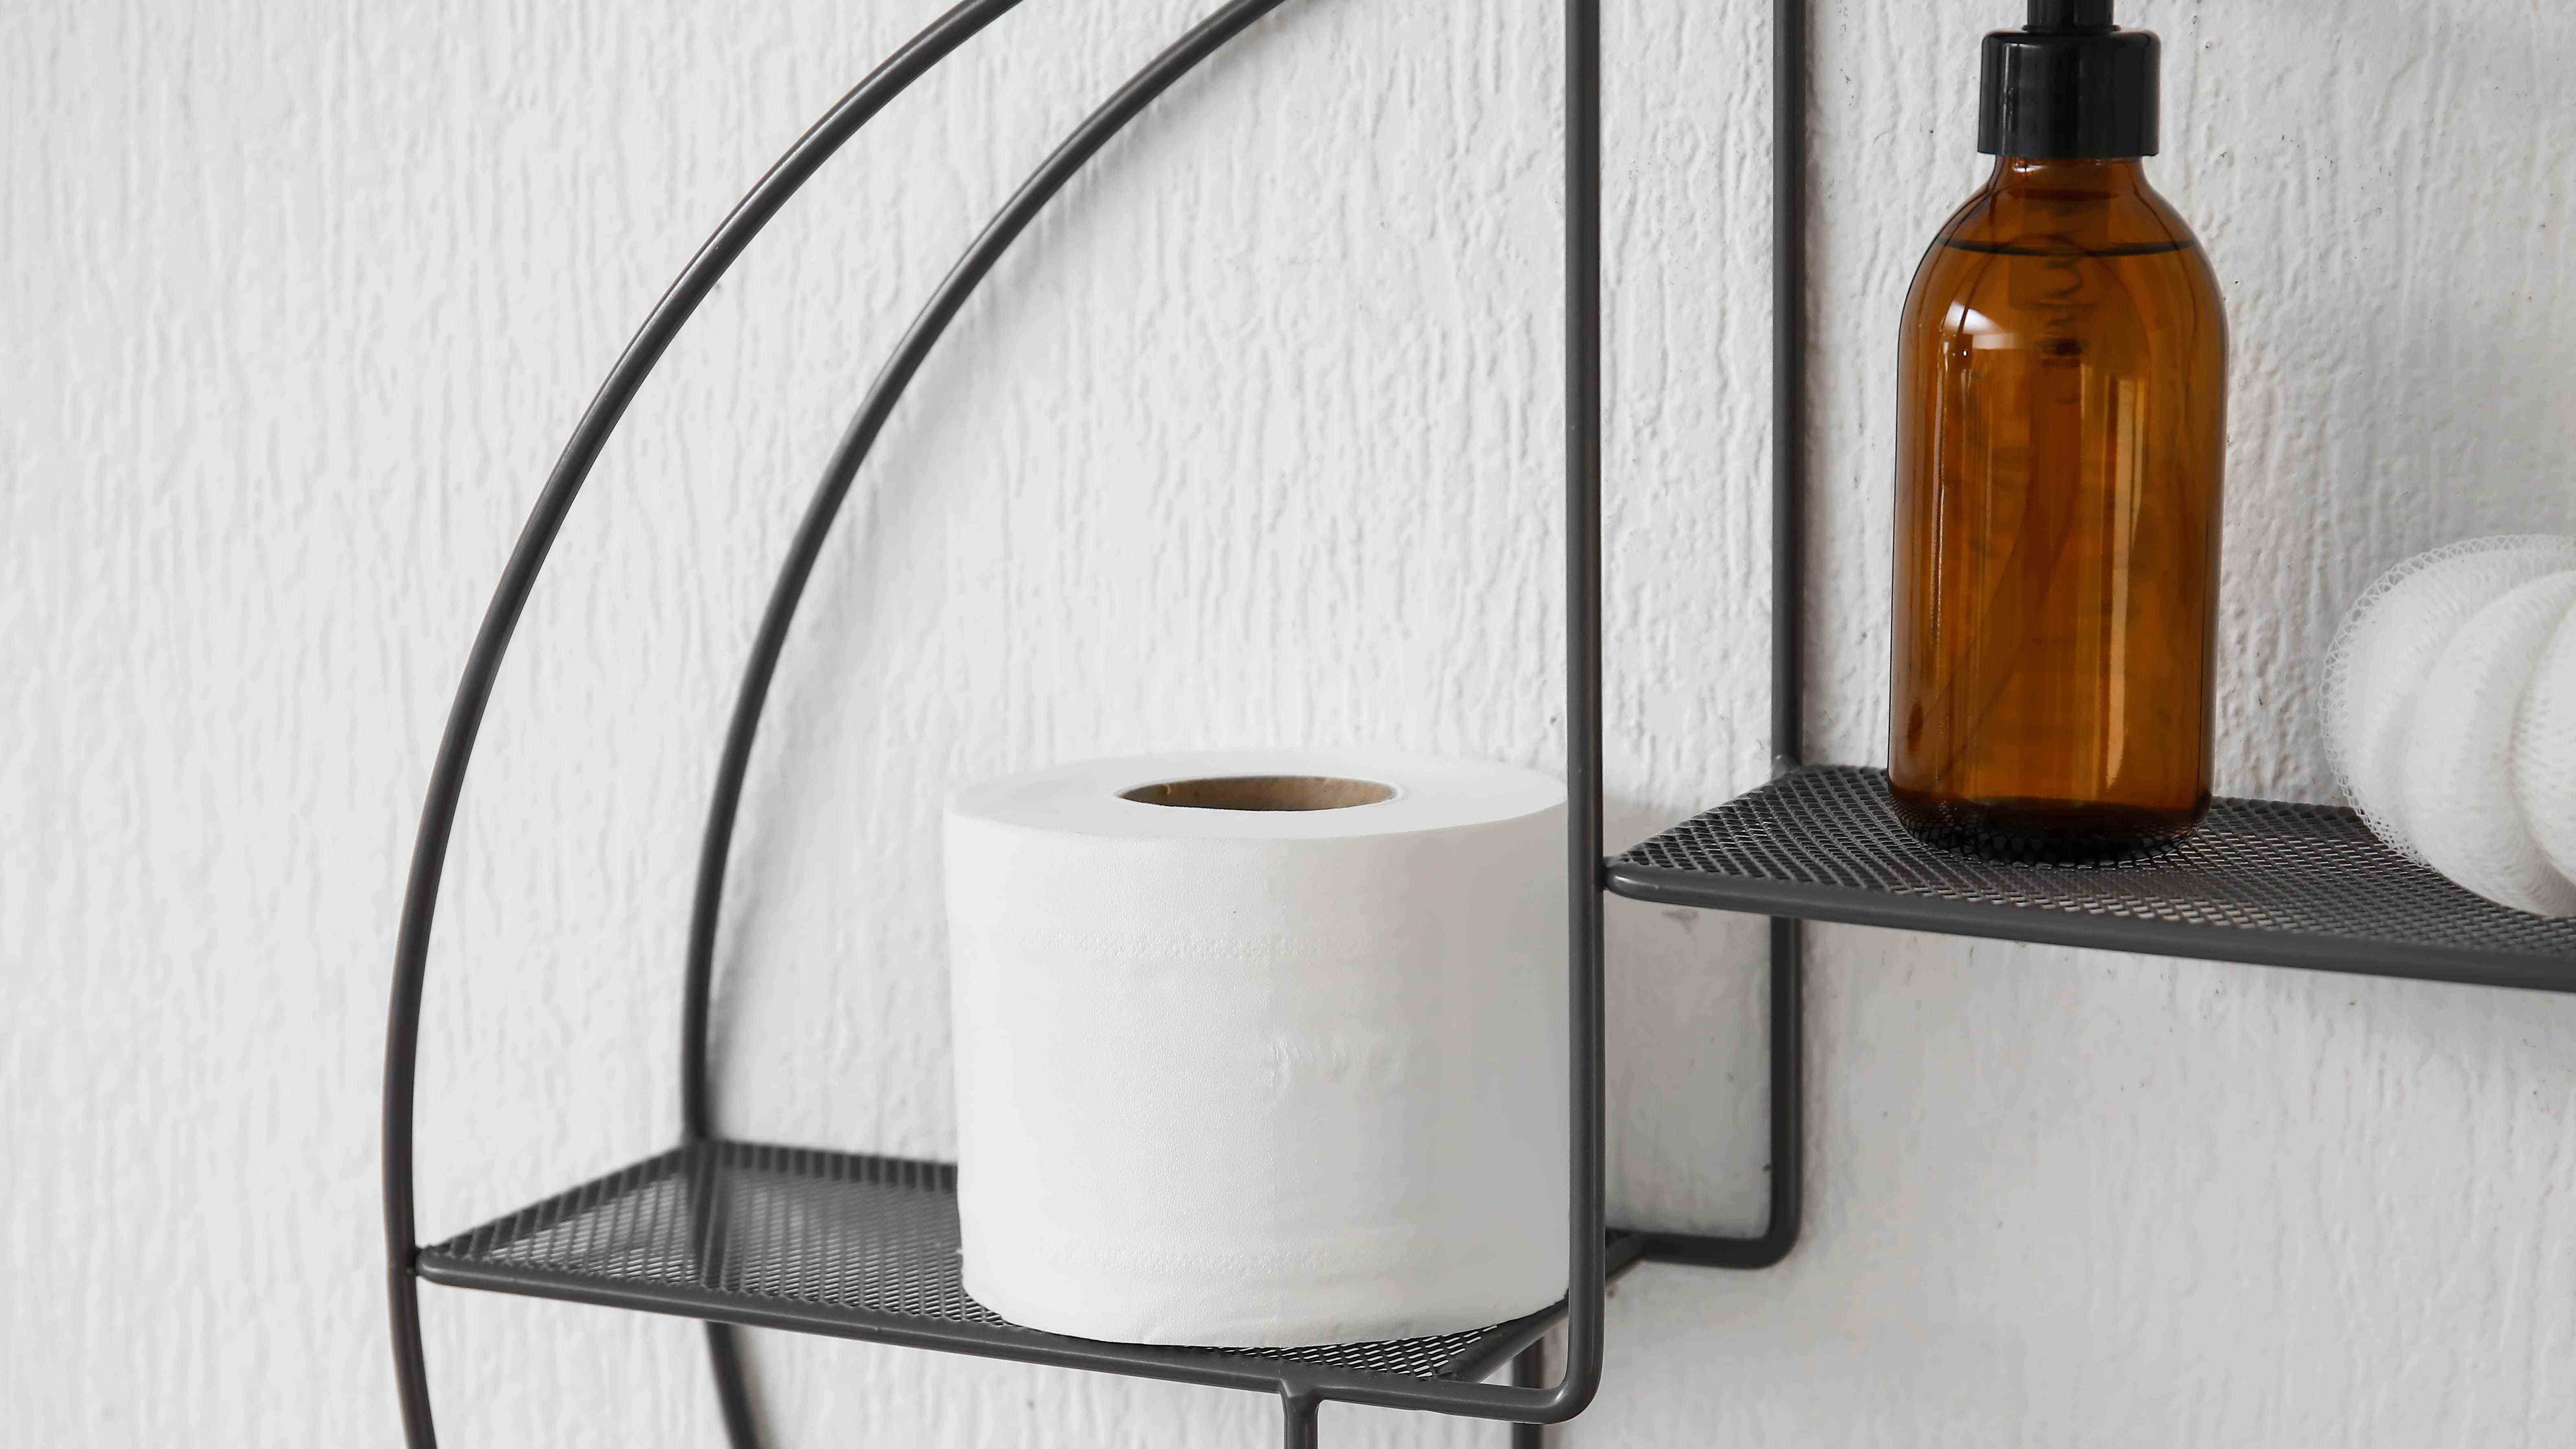 Rouleau de papier toilette et huile essentielle